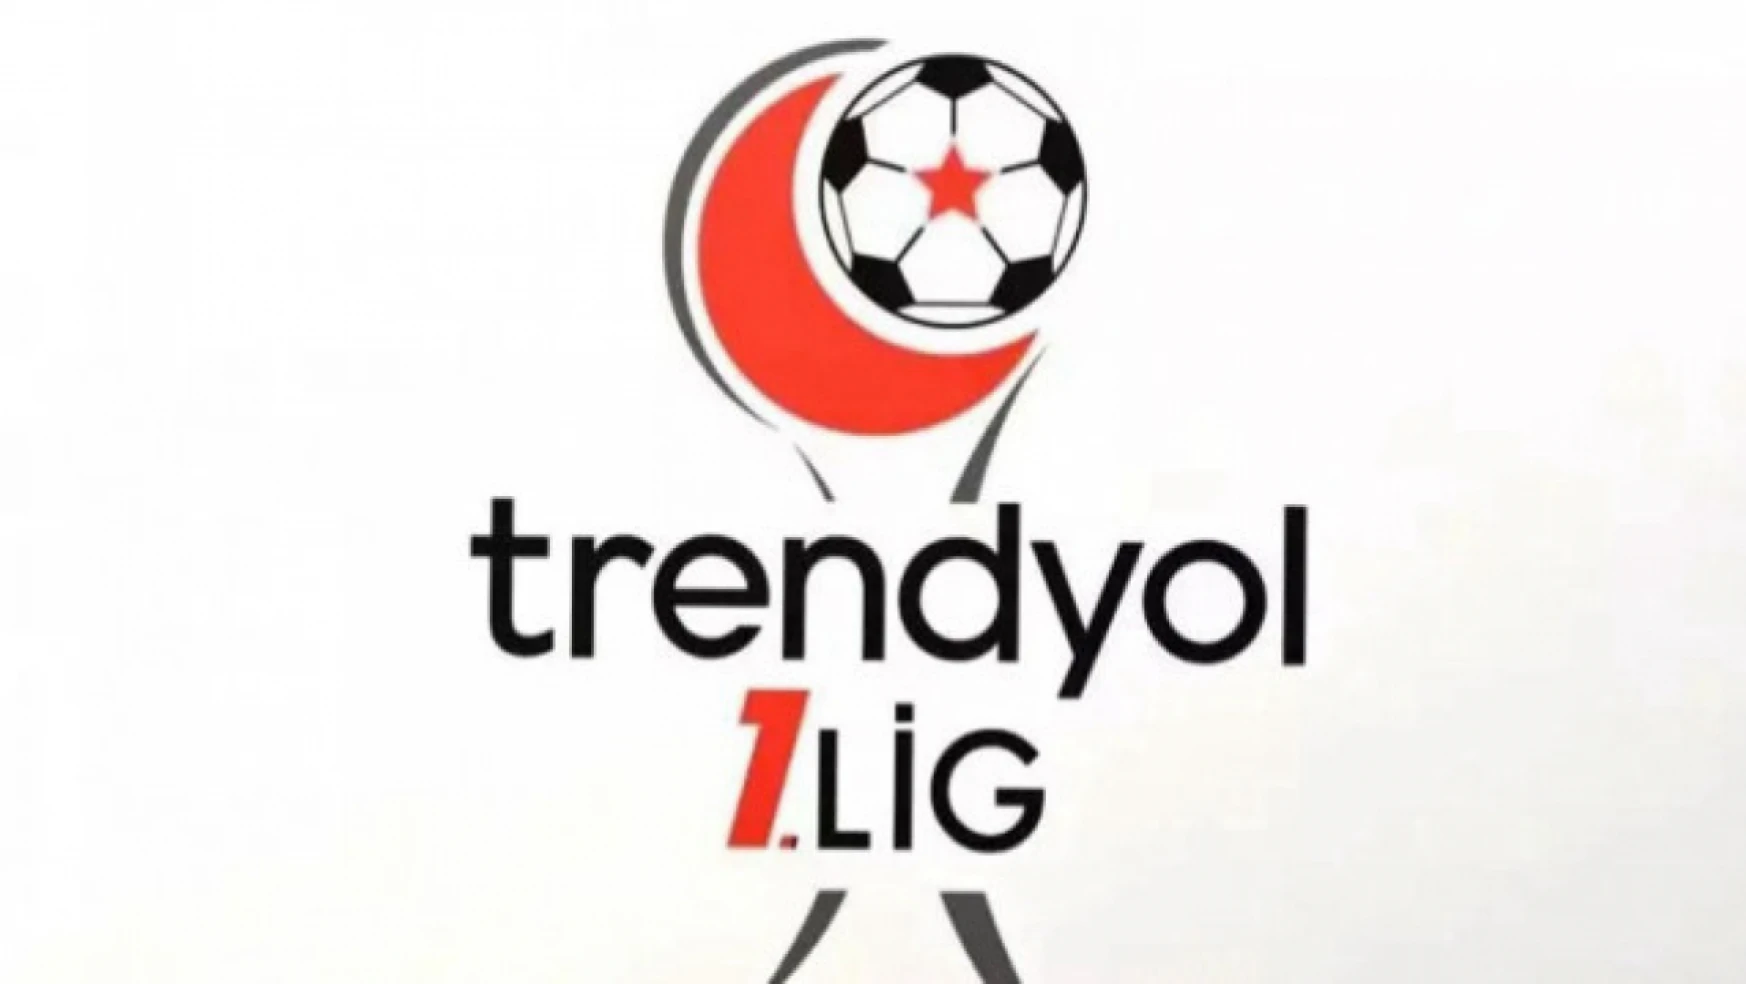 Trendyol 1. Lig'de 28 ve 29. haftaların programı belli oldu